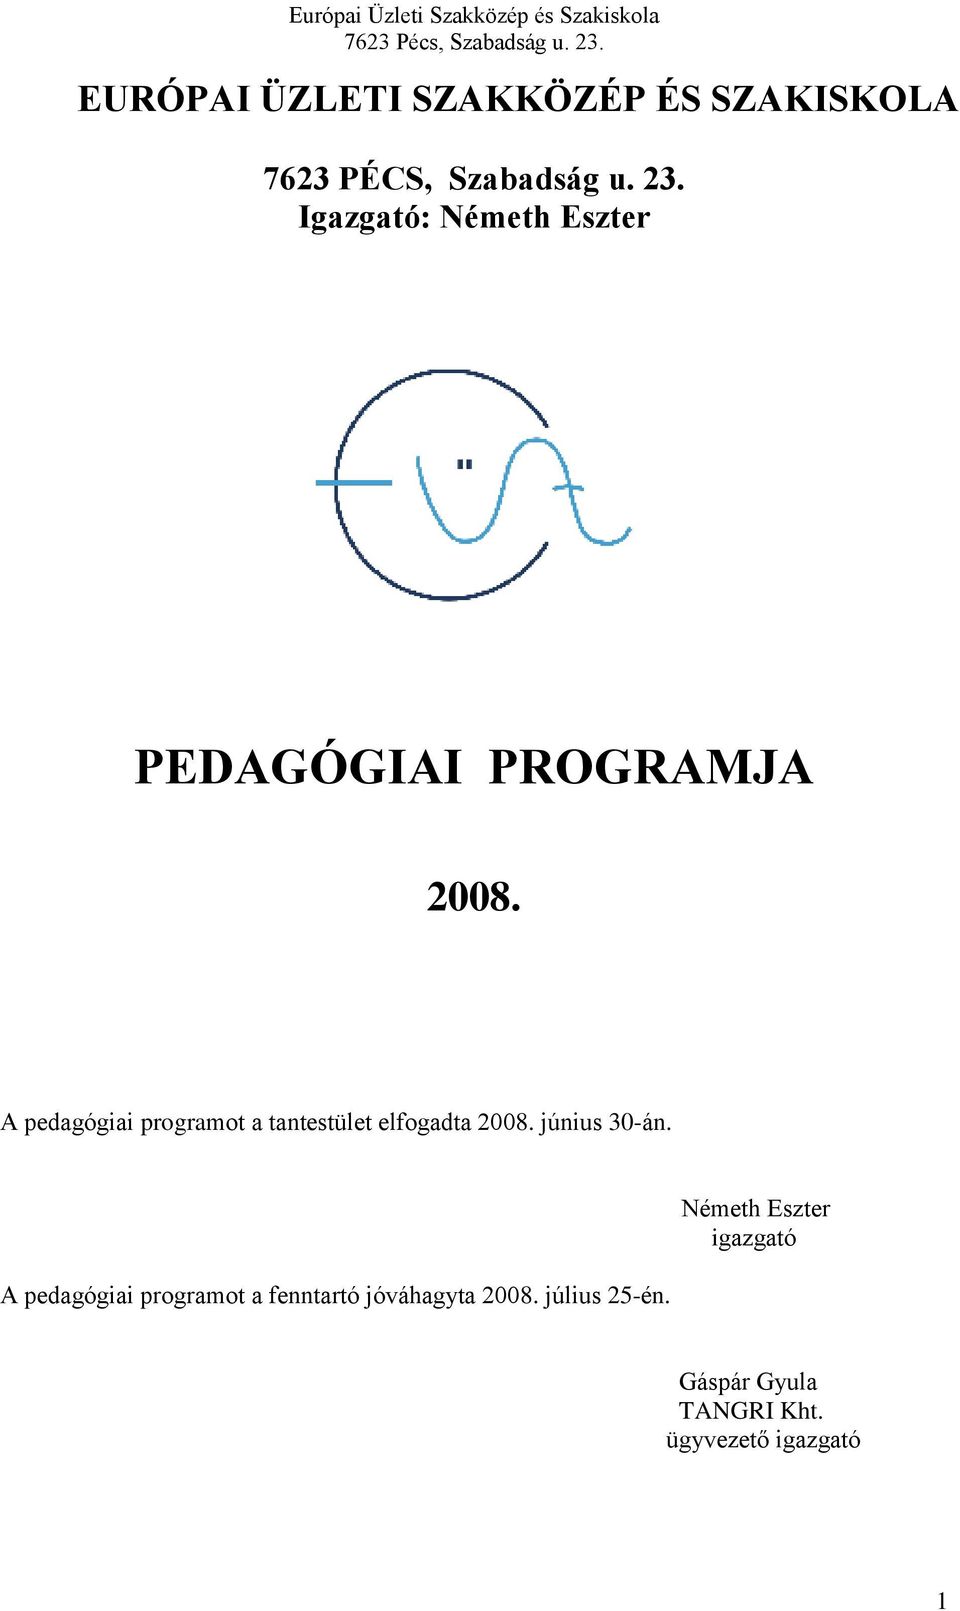 A pedagógiai programot a tantestület elfogadta 2008. június 30-án.